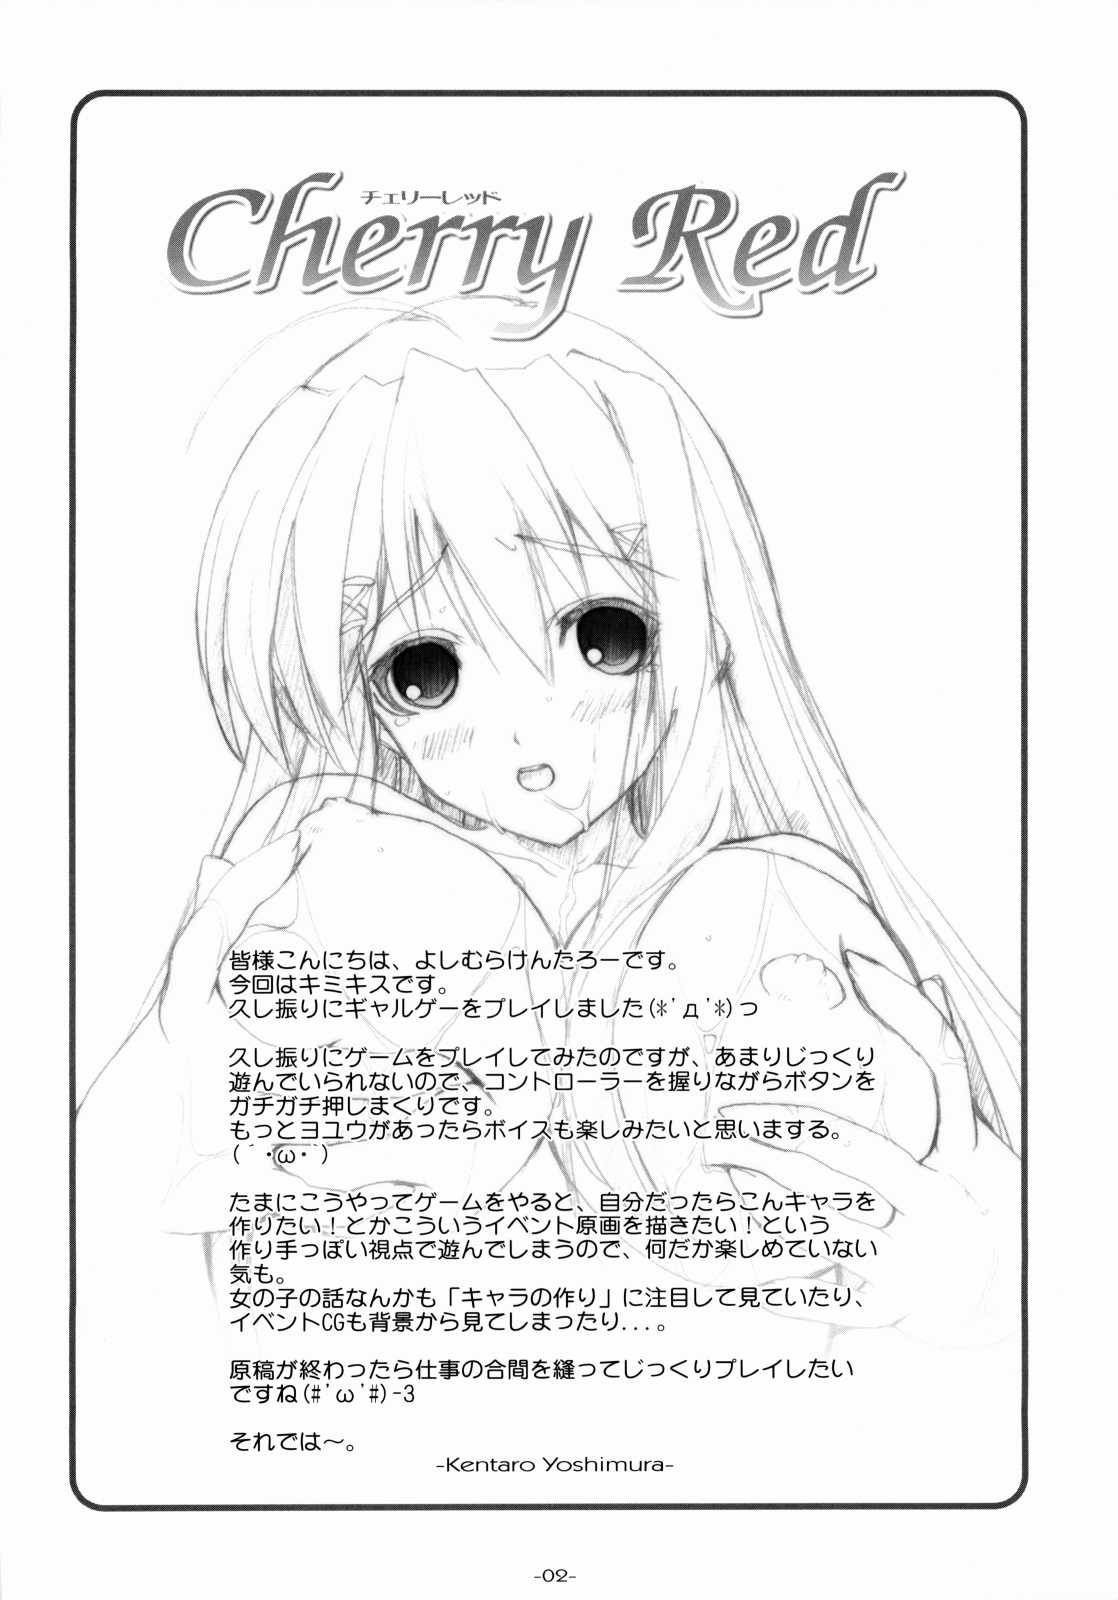 [Graphicarossa (Yoshimura Kentaro)] Cherry Red (KiMiKiSS) [Graphicarossa(よしむらけんたろー)] Cherry Red (キミキス)